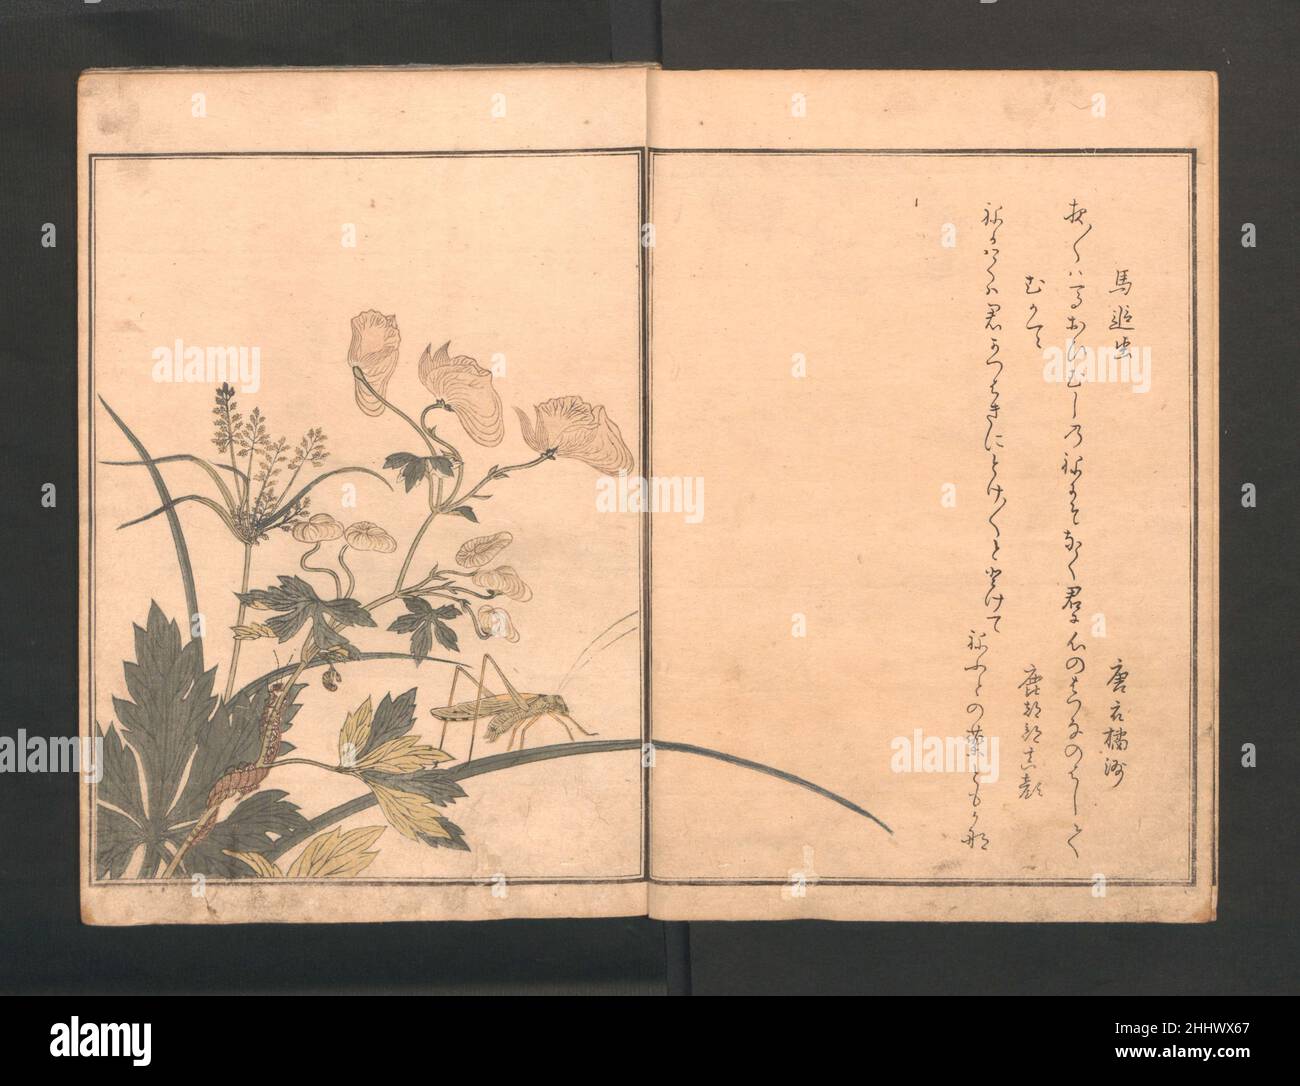 Livre photo des créatures rampantes (le livre des insectes) (Ehon mushi erami) probablement 1823 (édition ultérieure) Kitagawa Utamaro Japonais Utamaro était un élève du peintre de l'école Kanō Toriyama Sekien (1712–1788).Chaque double page d'illustration d'insectes et de reptiles a une paire de kyōka—'poèmes comiques sur les sentiments de l'amour'- inspiré par les images.Ici, le kyōka implique une cicada du soir et une araignée:cicada du soir, est-ce vous qui vole le bon moment pour voler dans les bras d'un autre?mais vous pleurez constamment comme une âme pauvre vivant un jour à la fois.Une araignée retournant à son nid me rappelle un homme furtivel Banque D'Images